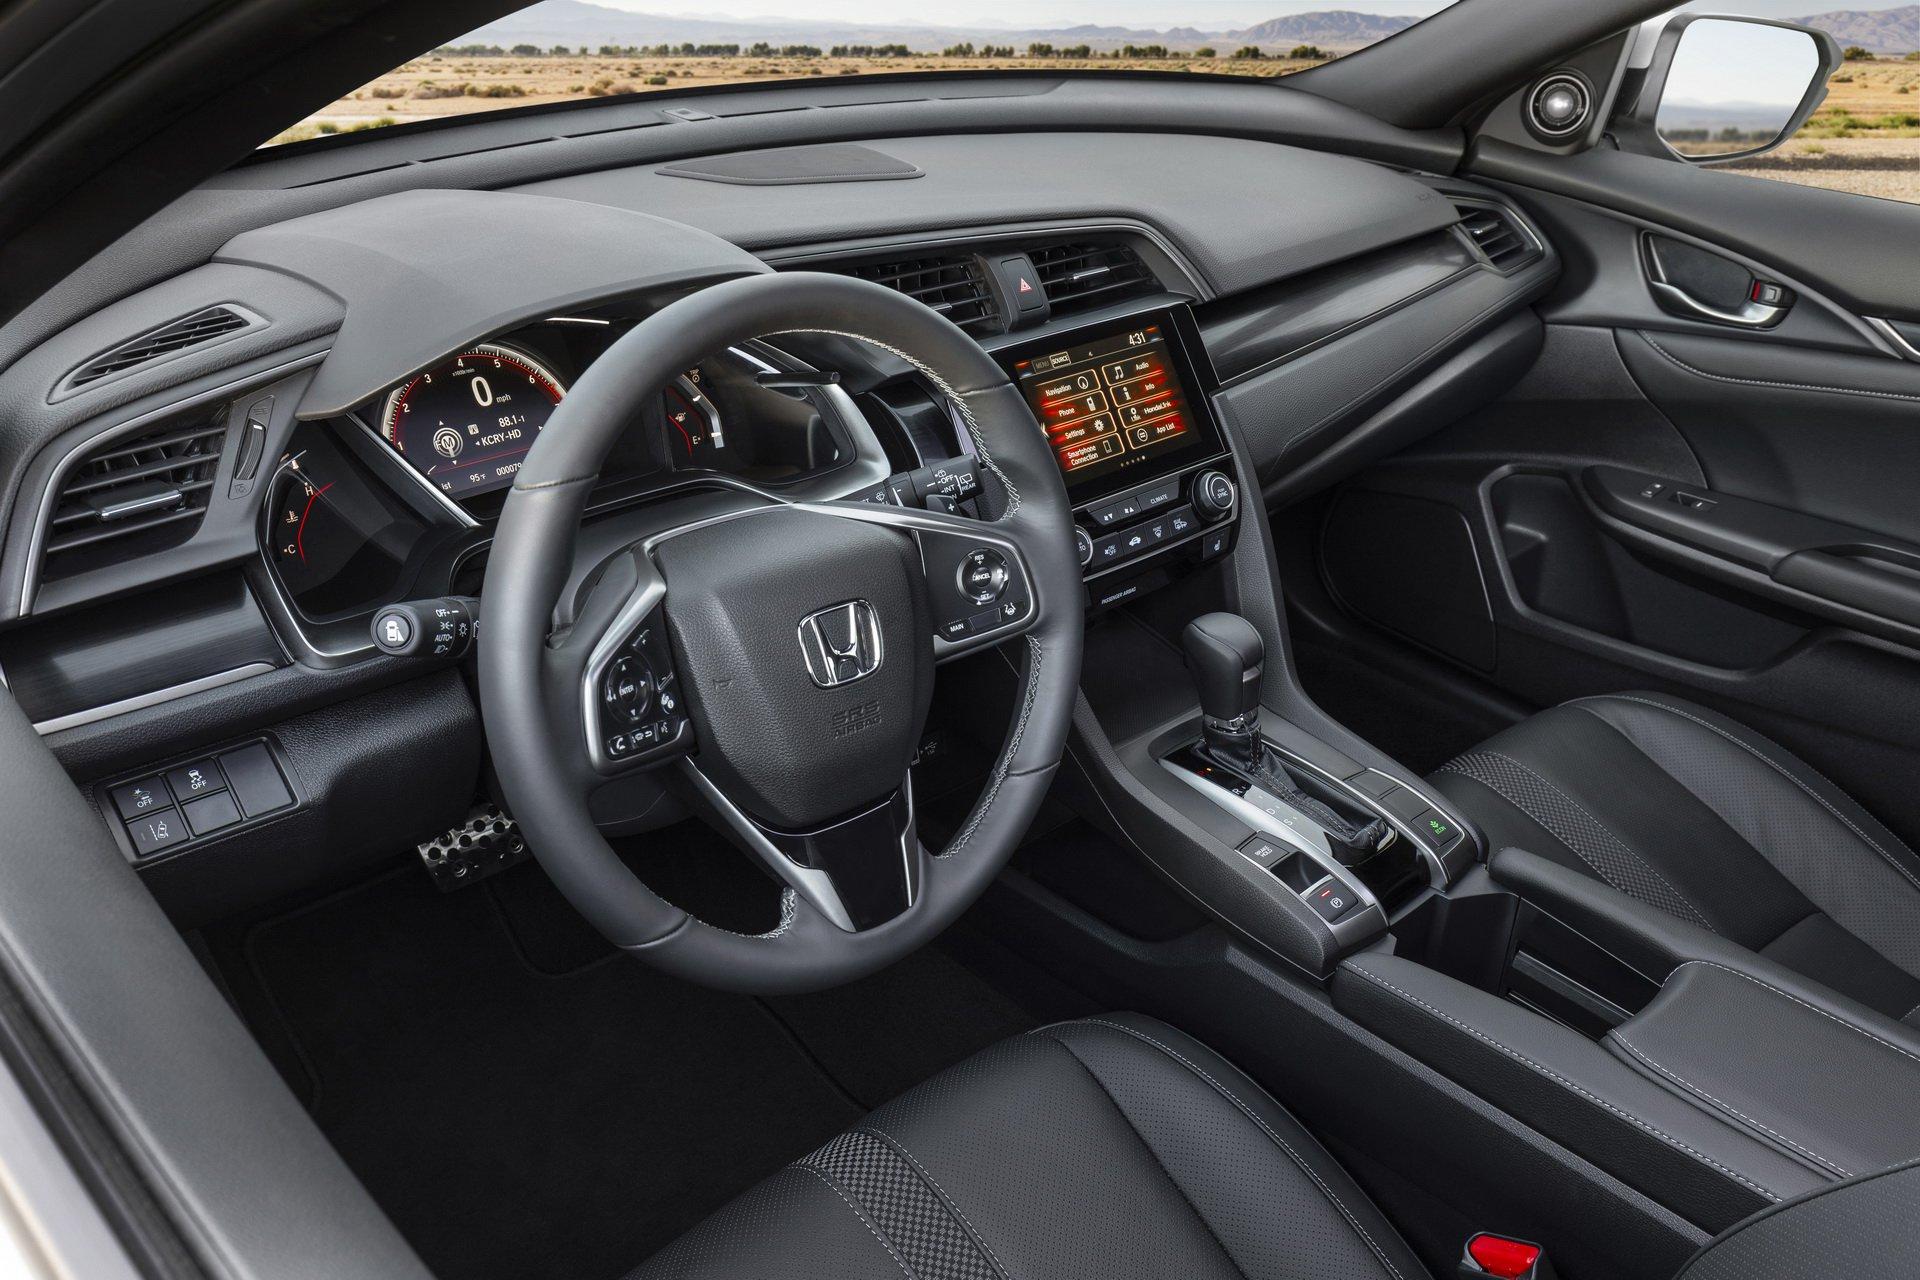 Honda Civic Hatchback 2020 ปรับโฉมดีไซน์ใหม่ เคาะราคาที่อเมริกาเริ่มต้นที่เกือบเจ็ดแสน